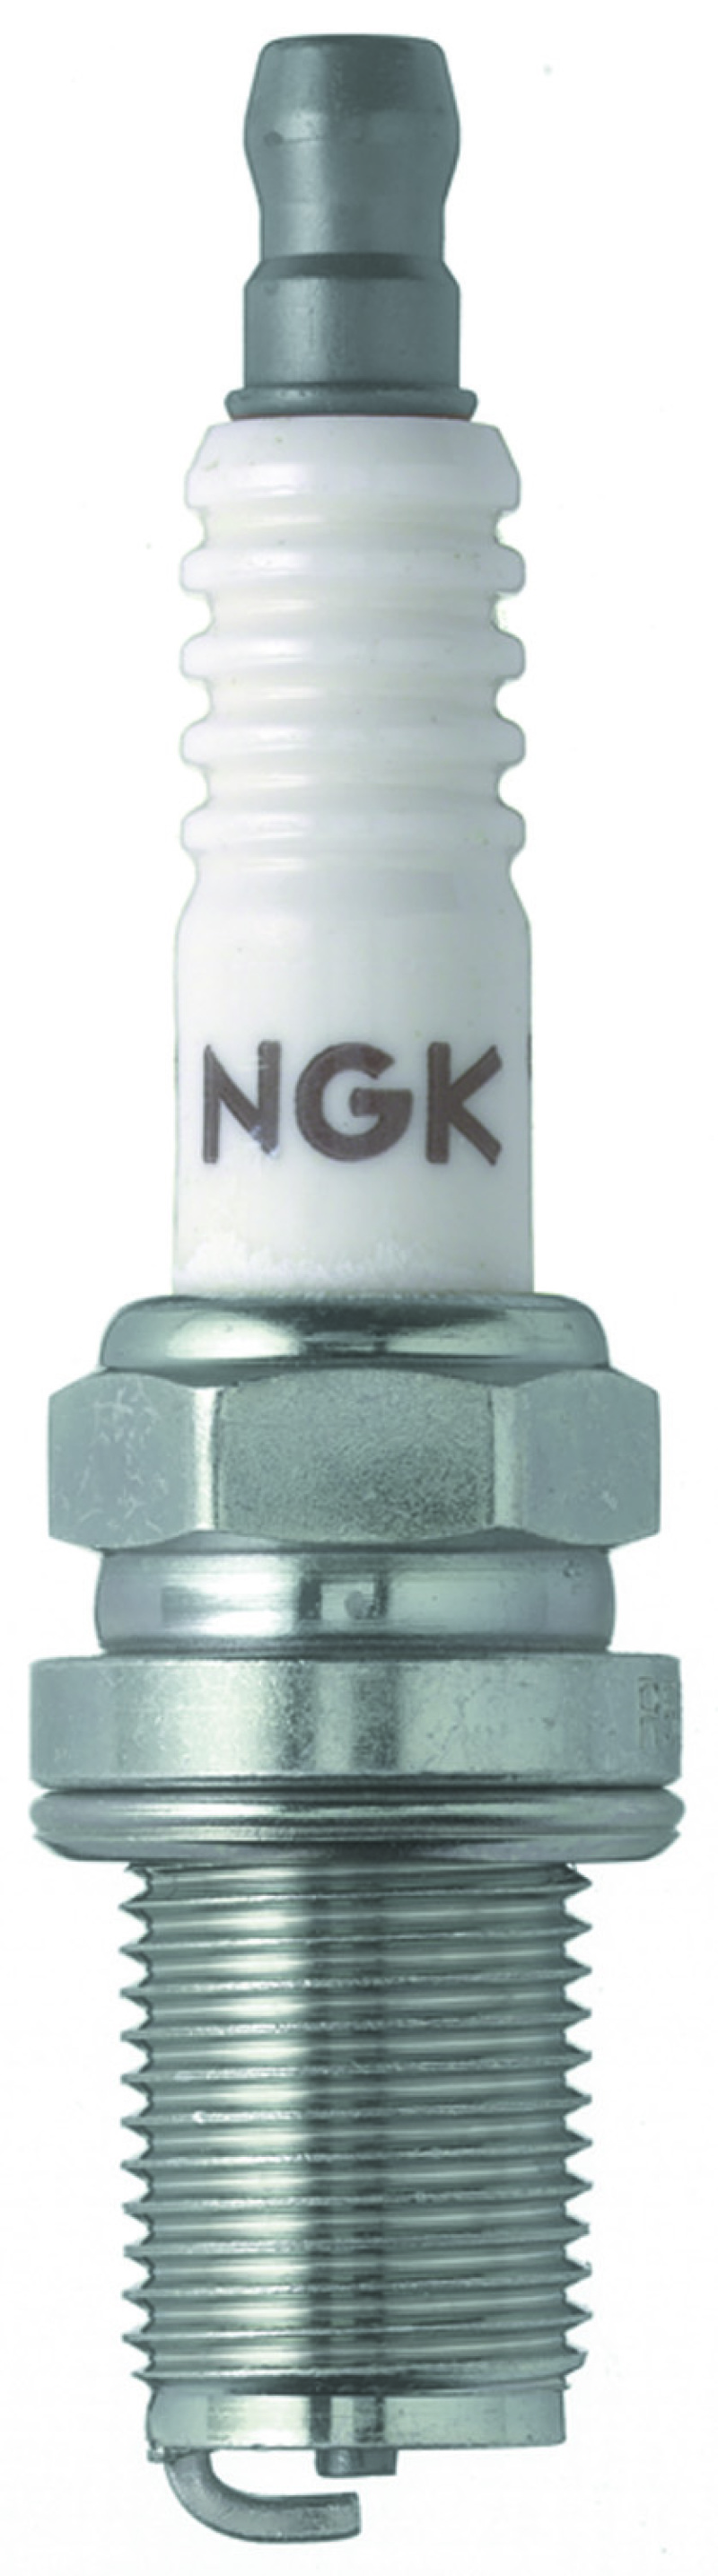 NGK Racing Spark Plug Box of 4 (R6601-10) - 4017